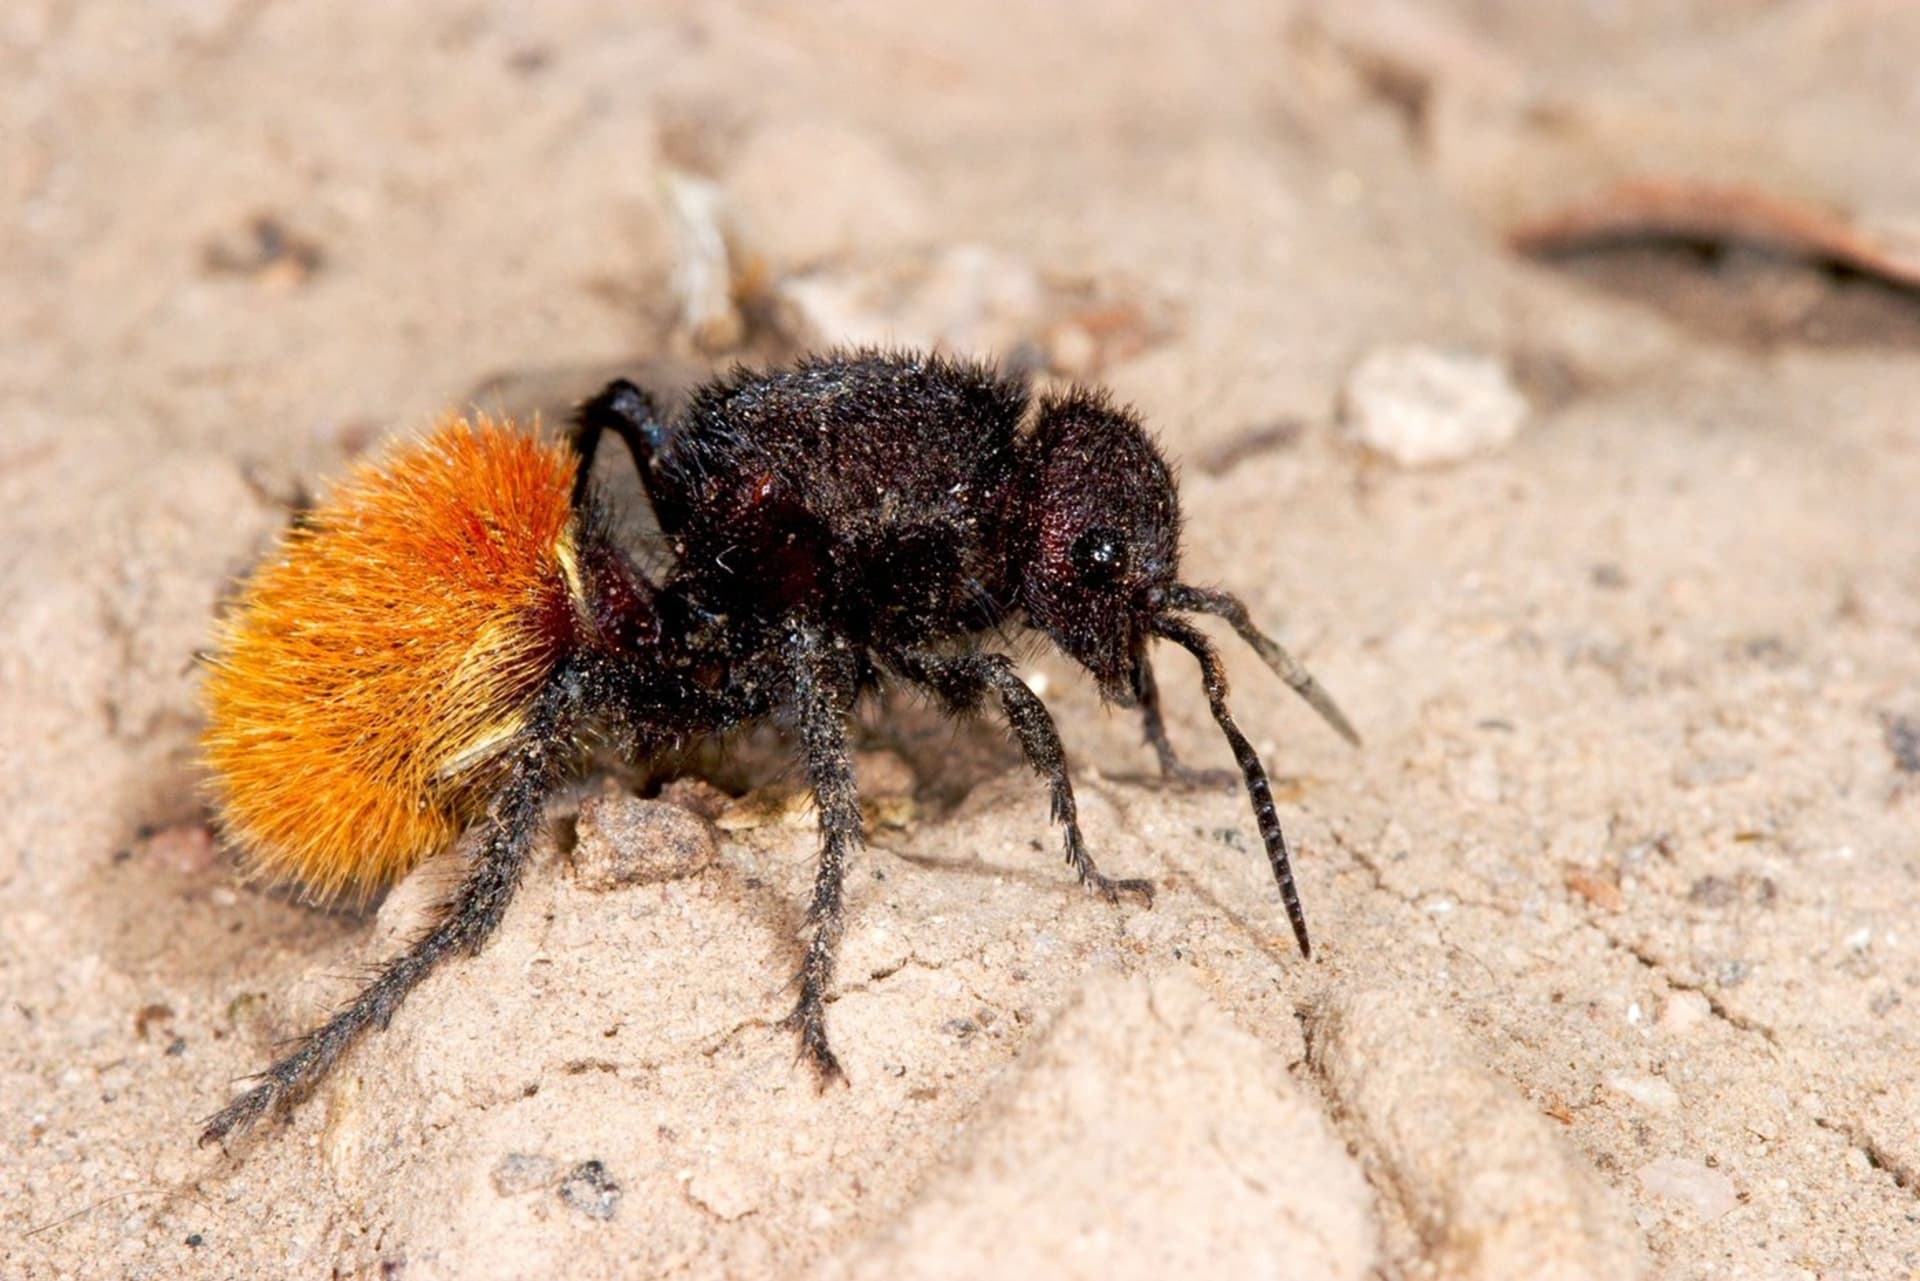 Kodulkovití jsou podobné mravencům